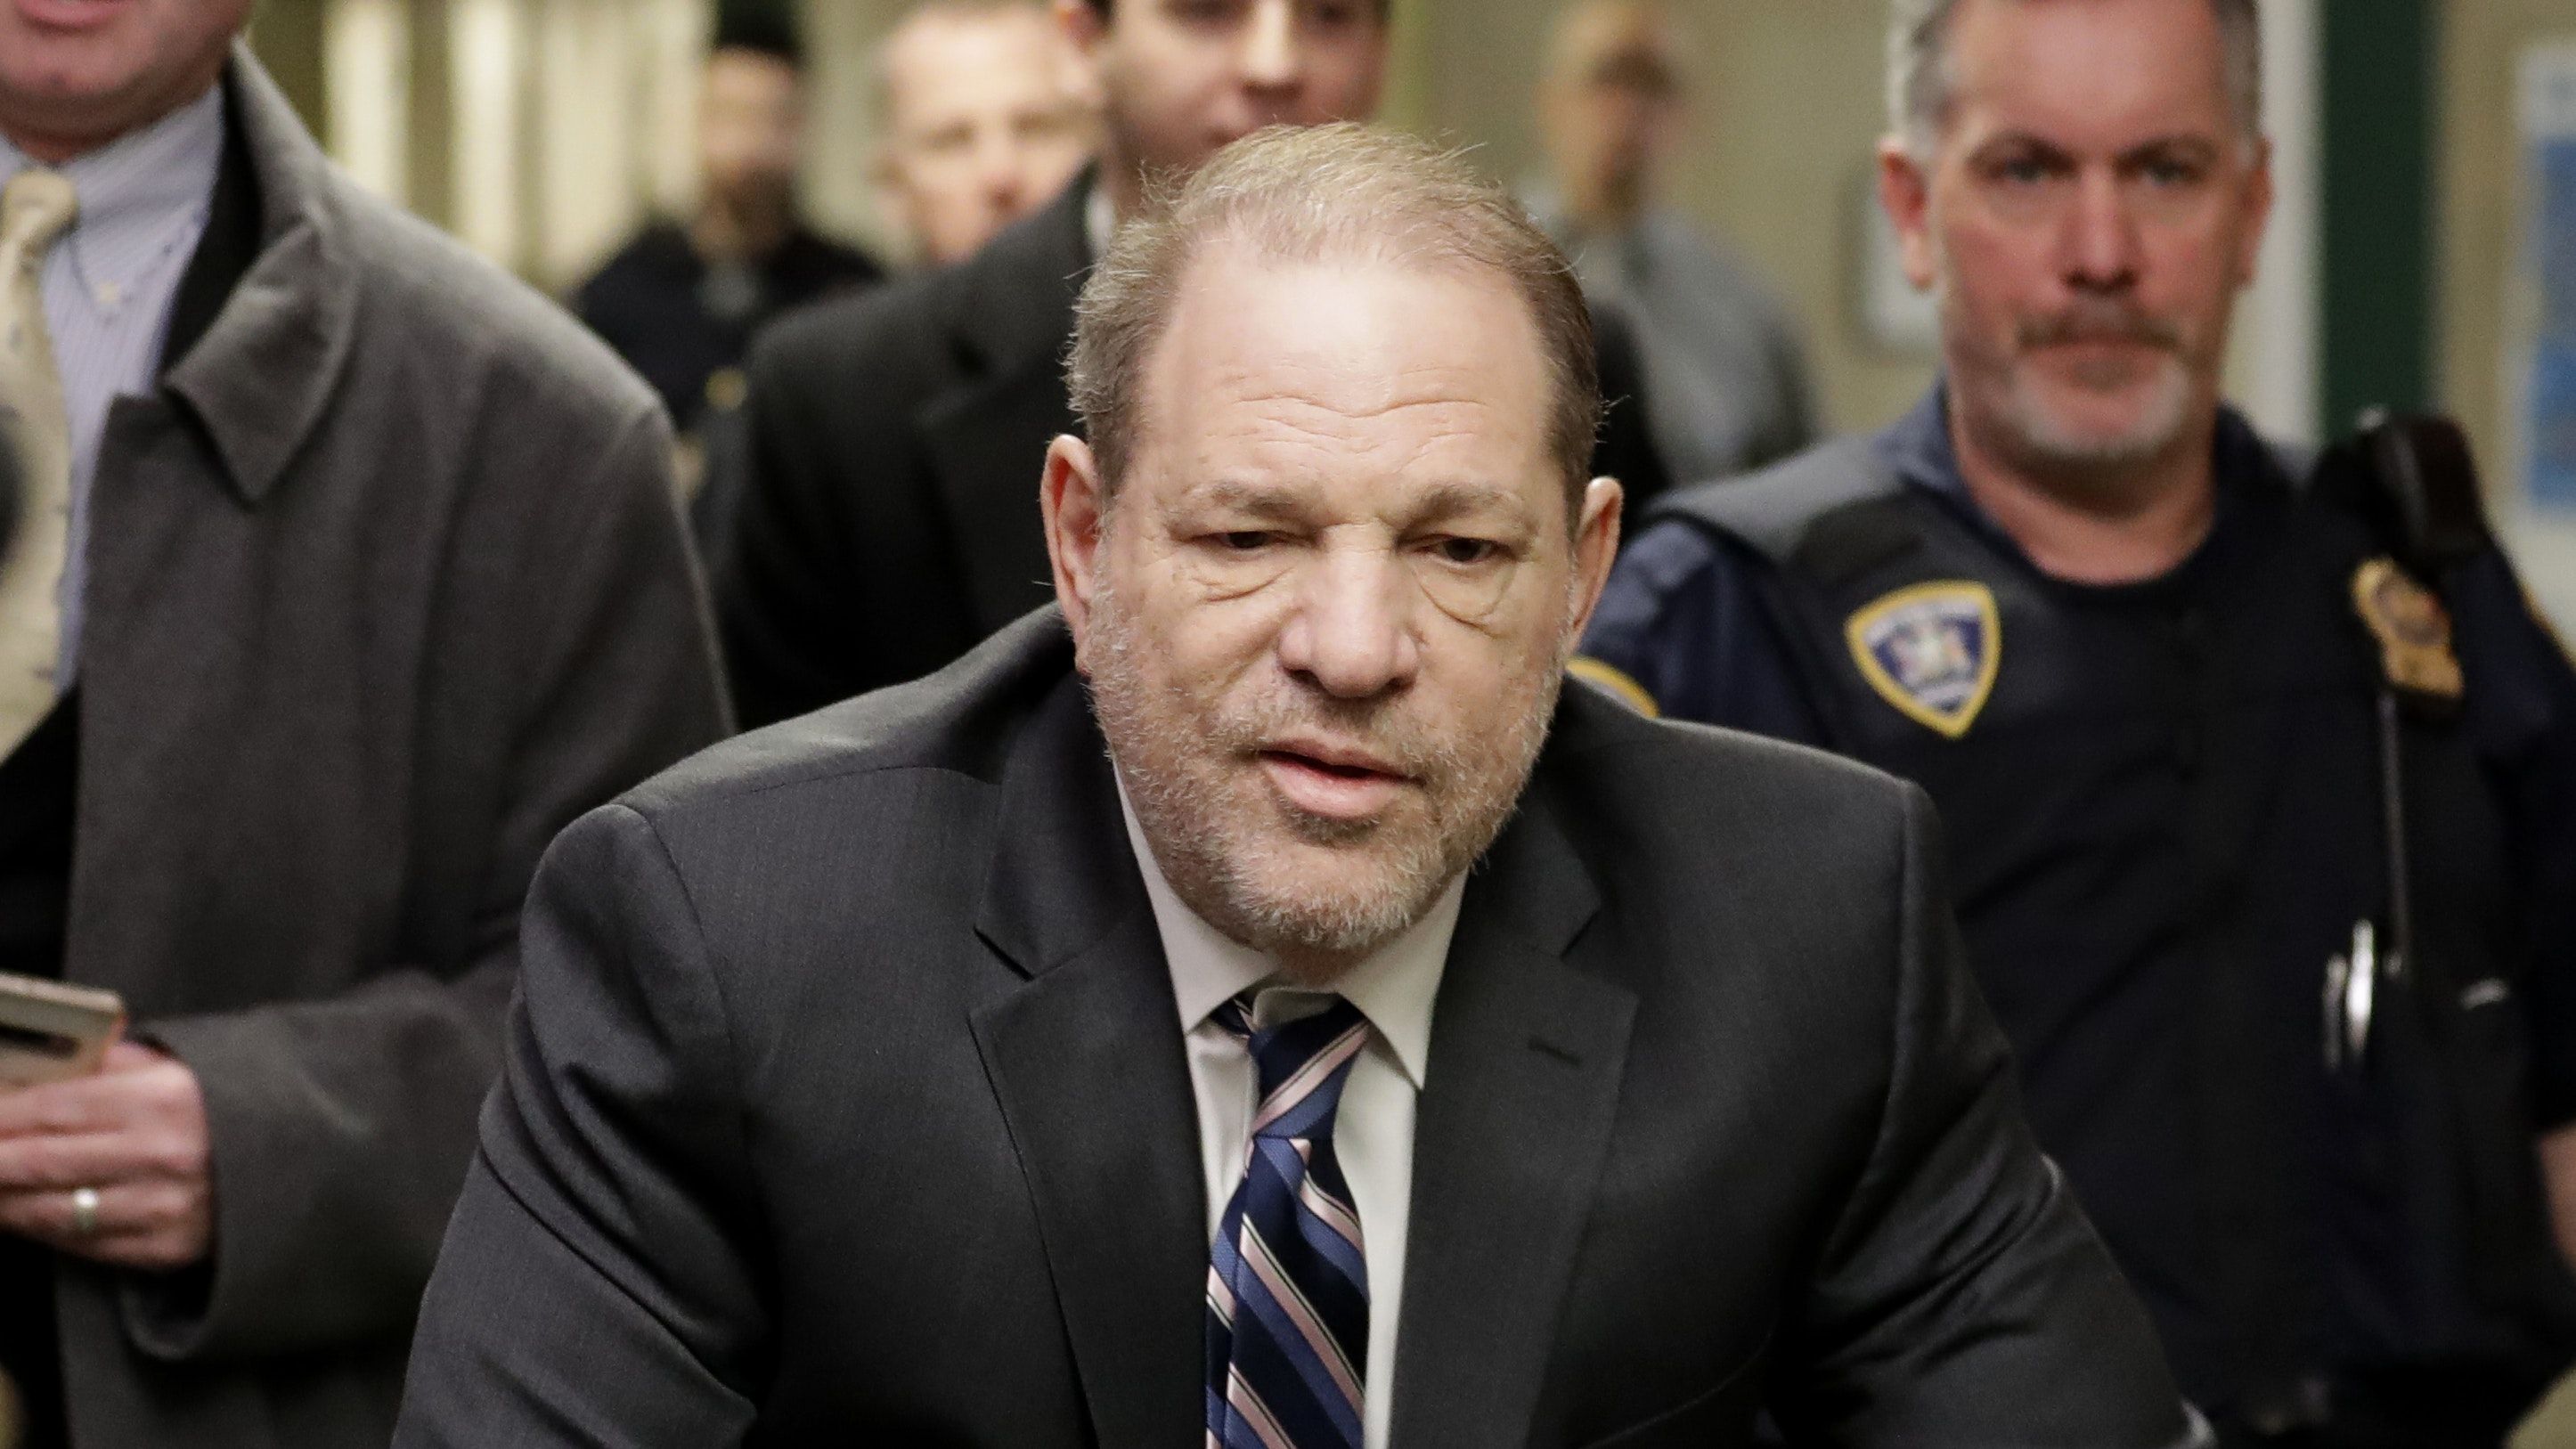 Harvey Weinstein found guilty